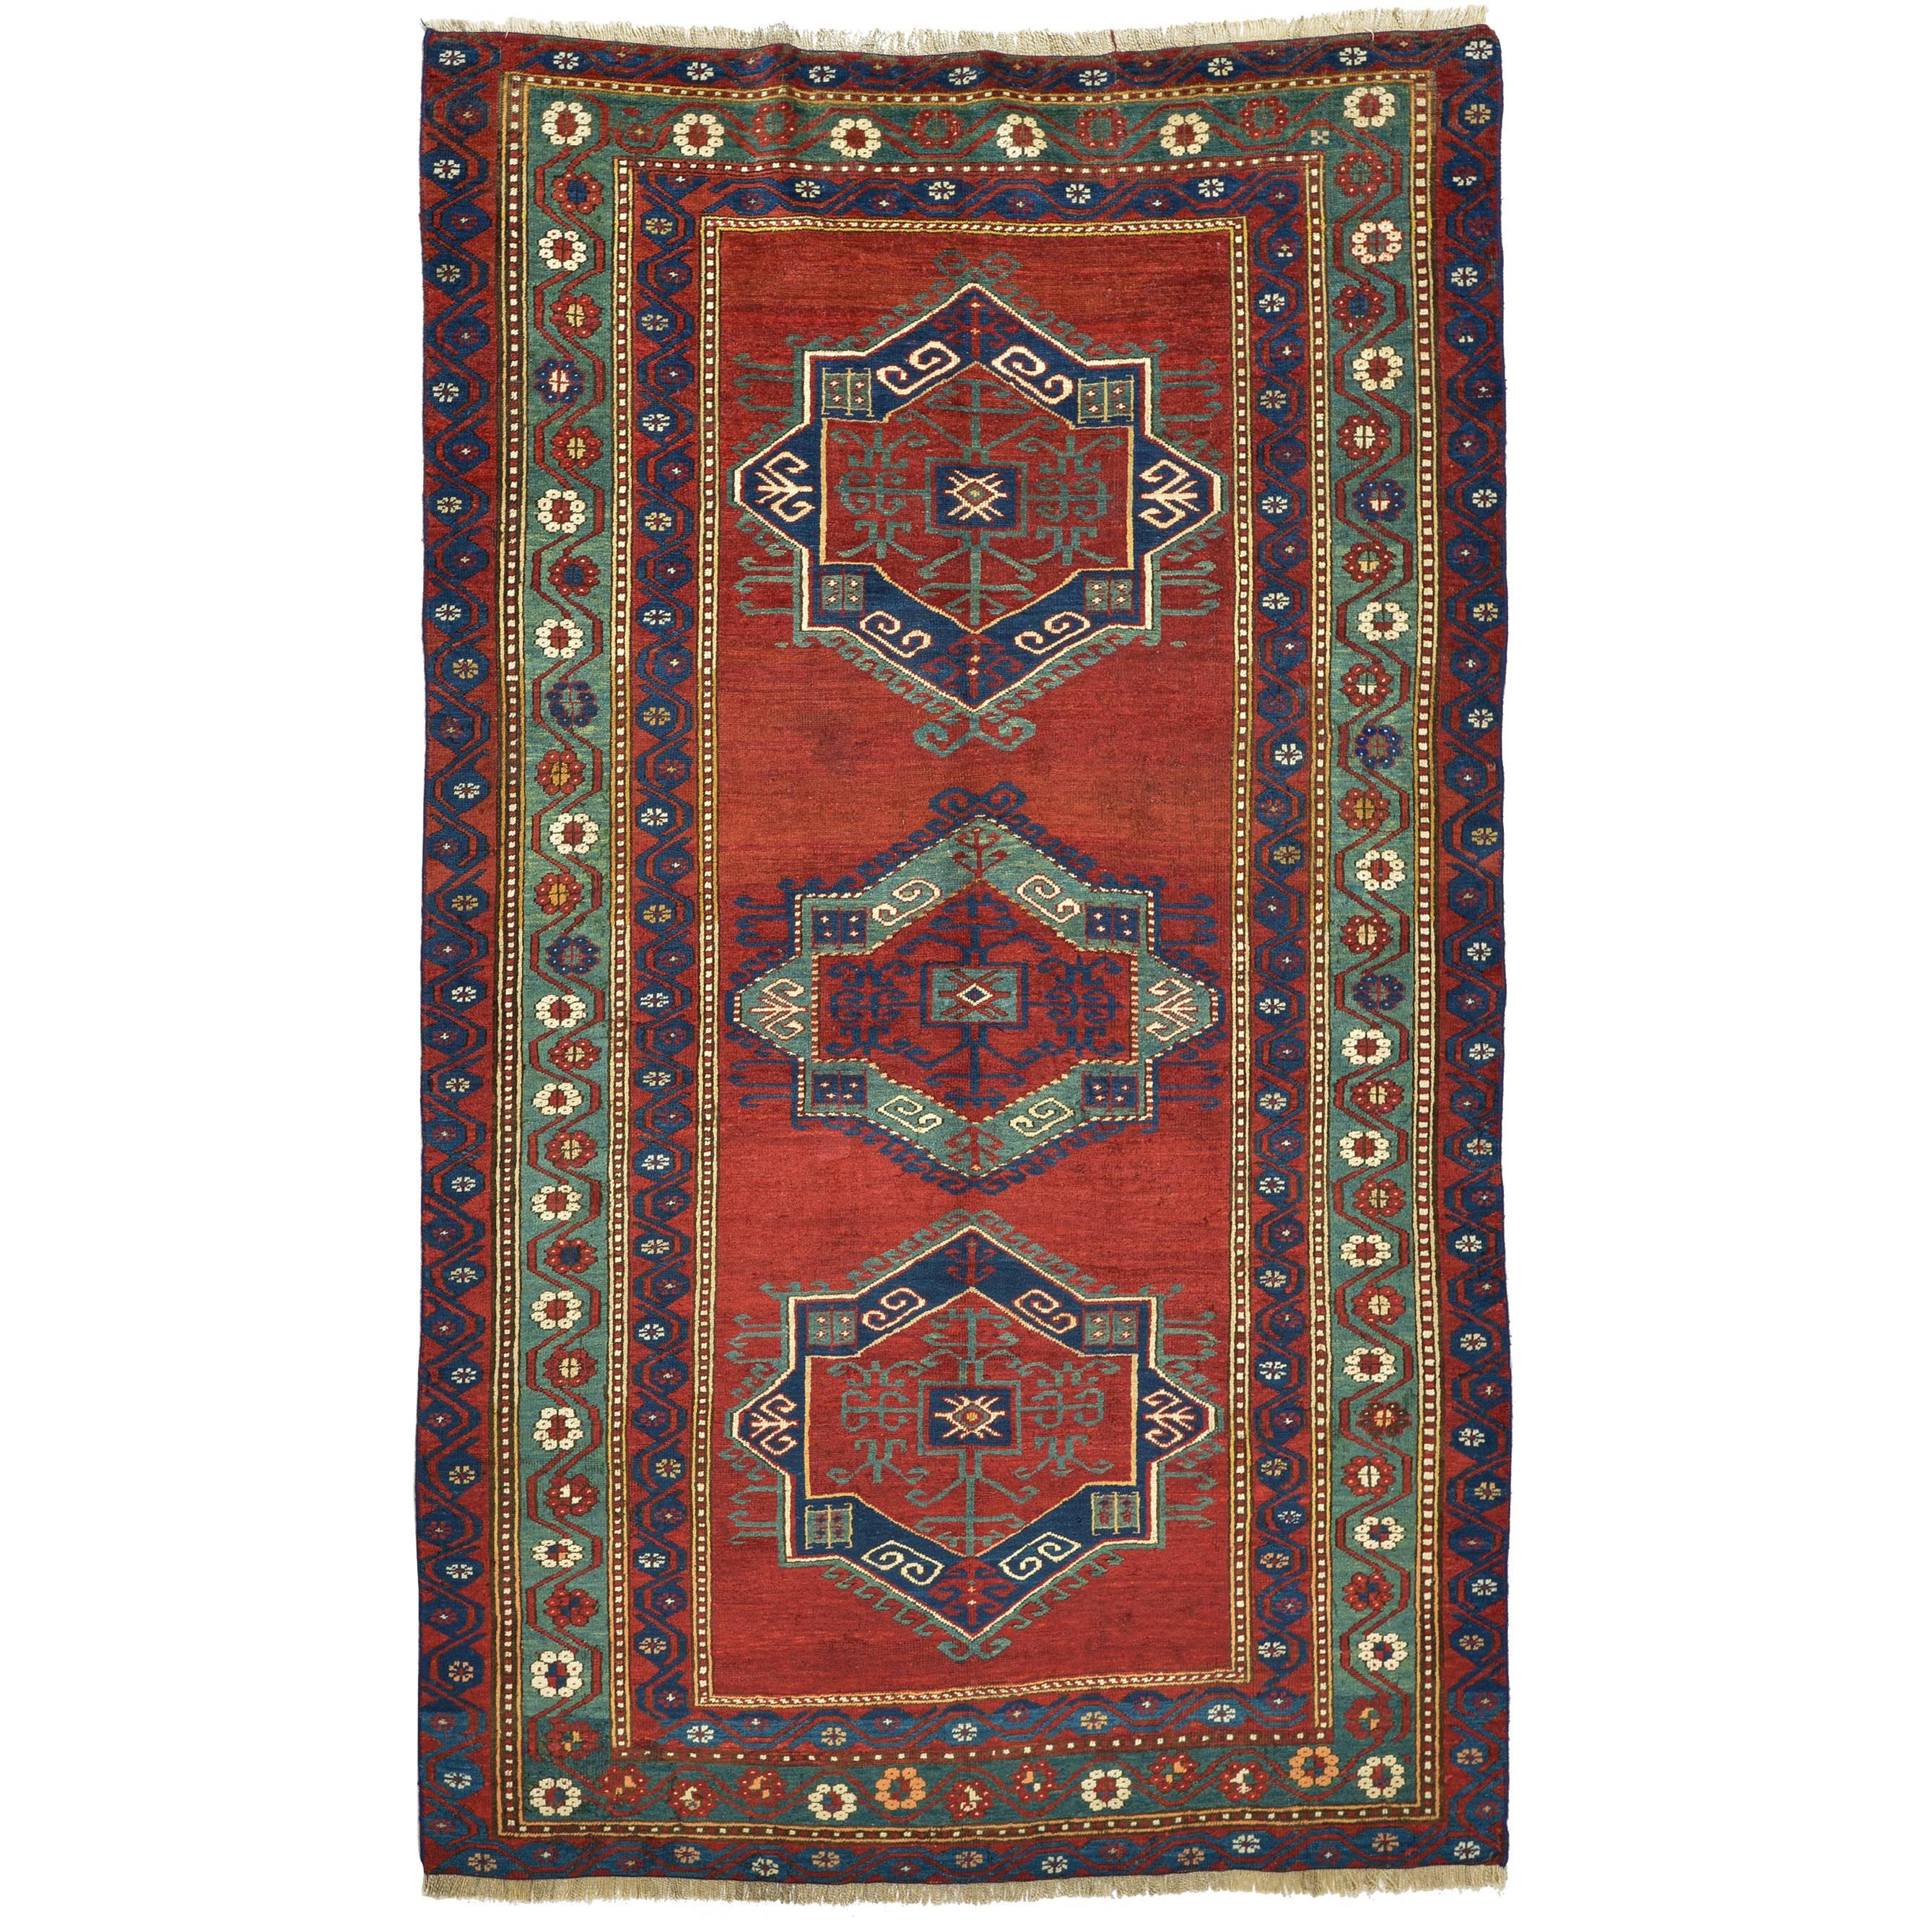 Antique Caucasian  KAZAK Rug with Original Colors